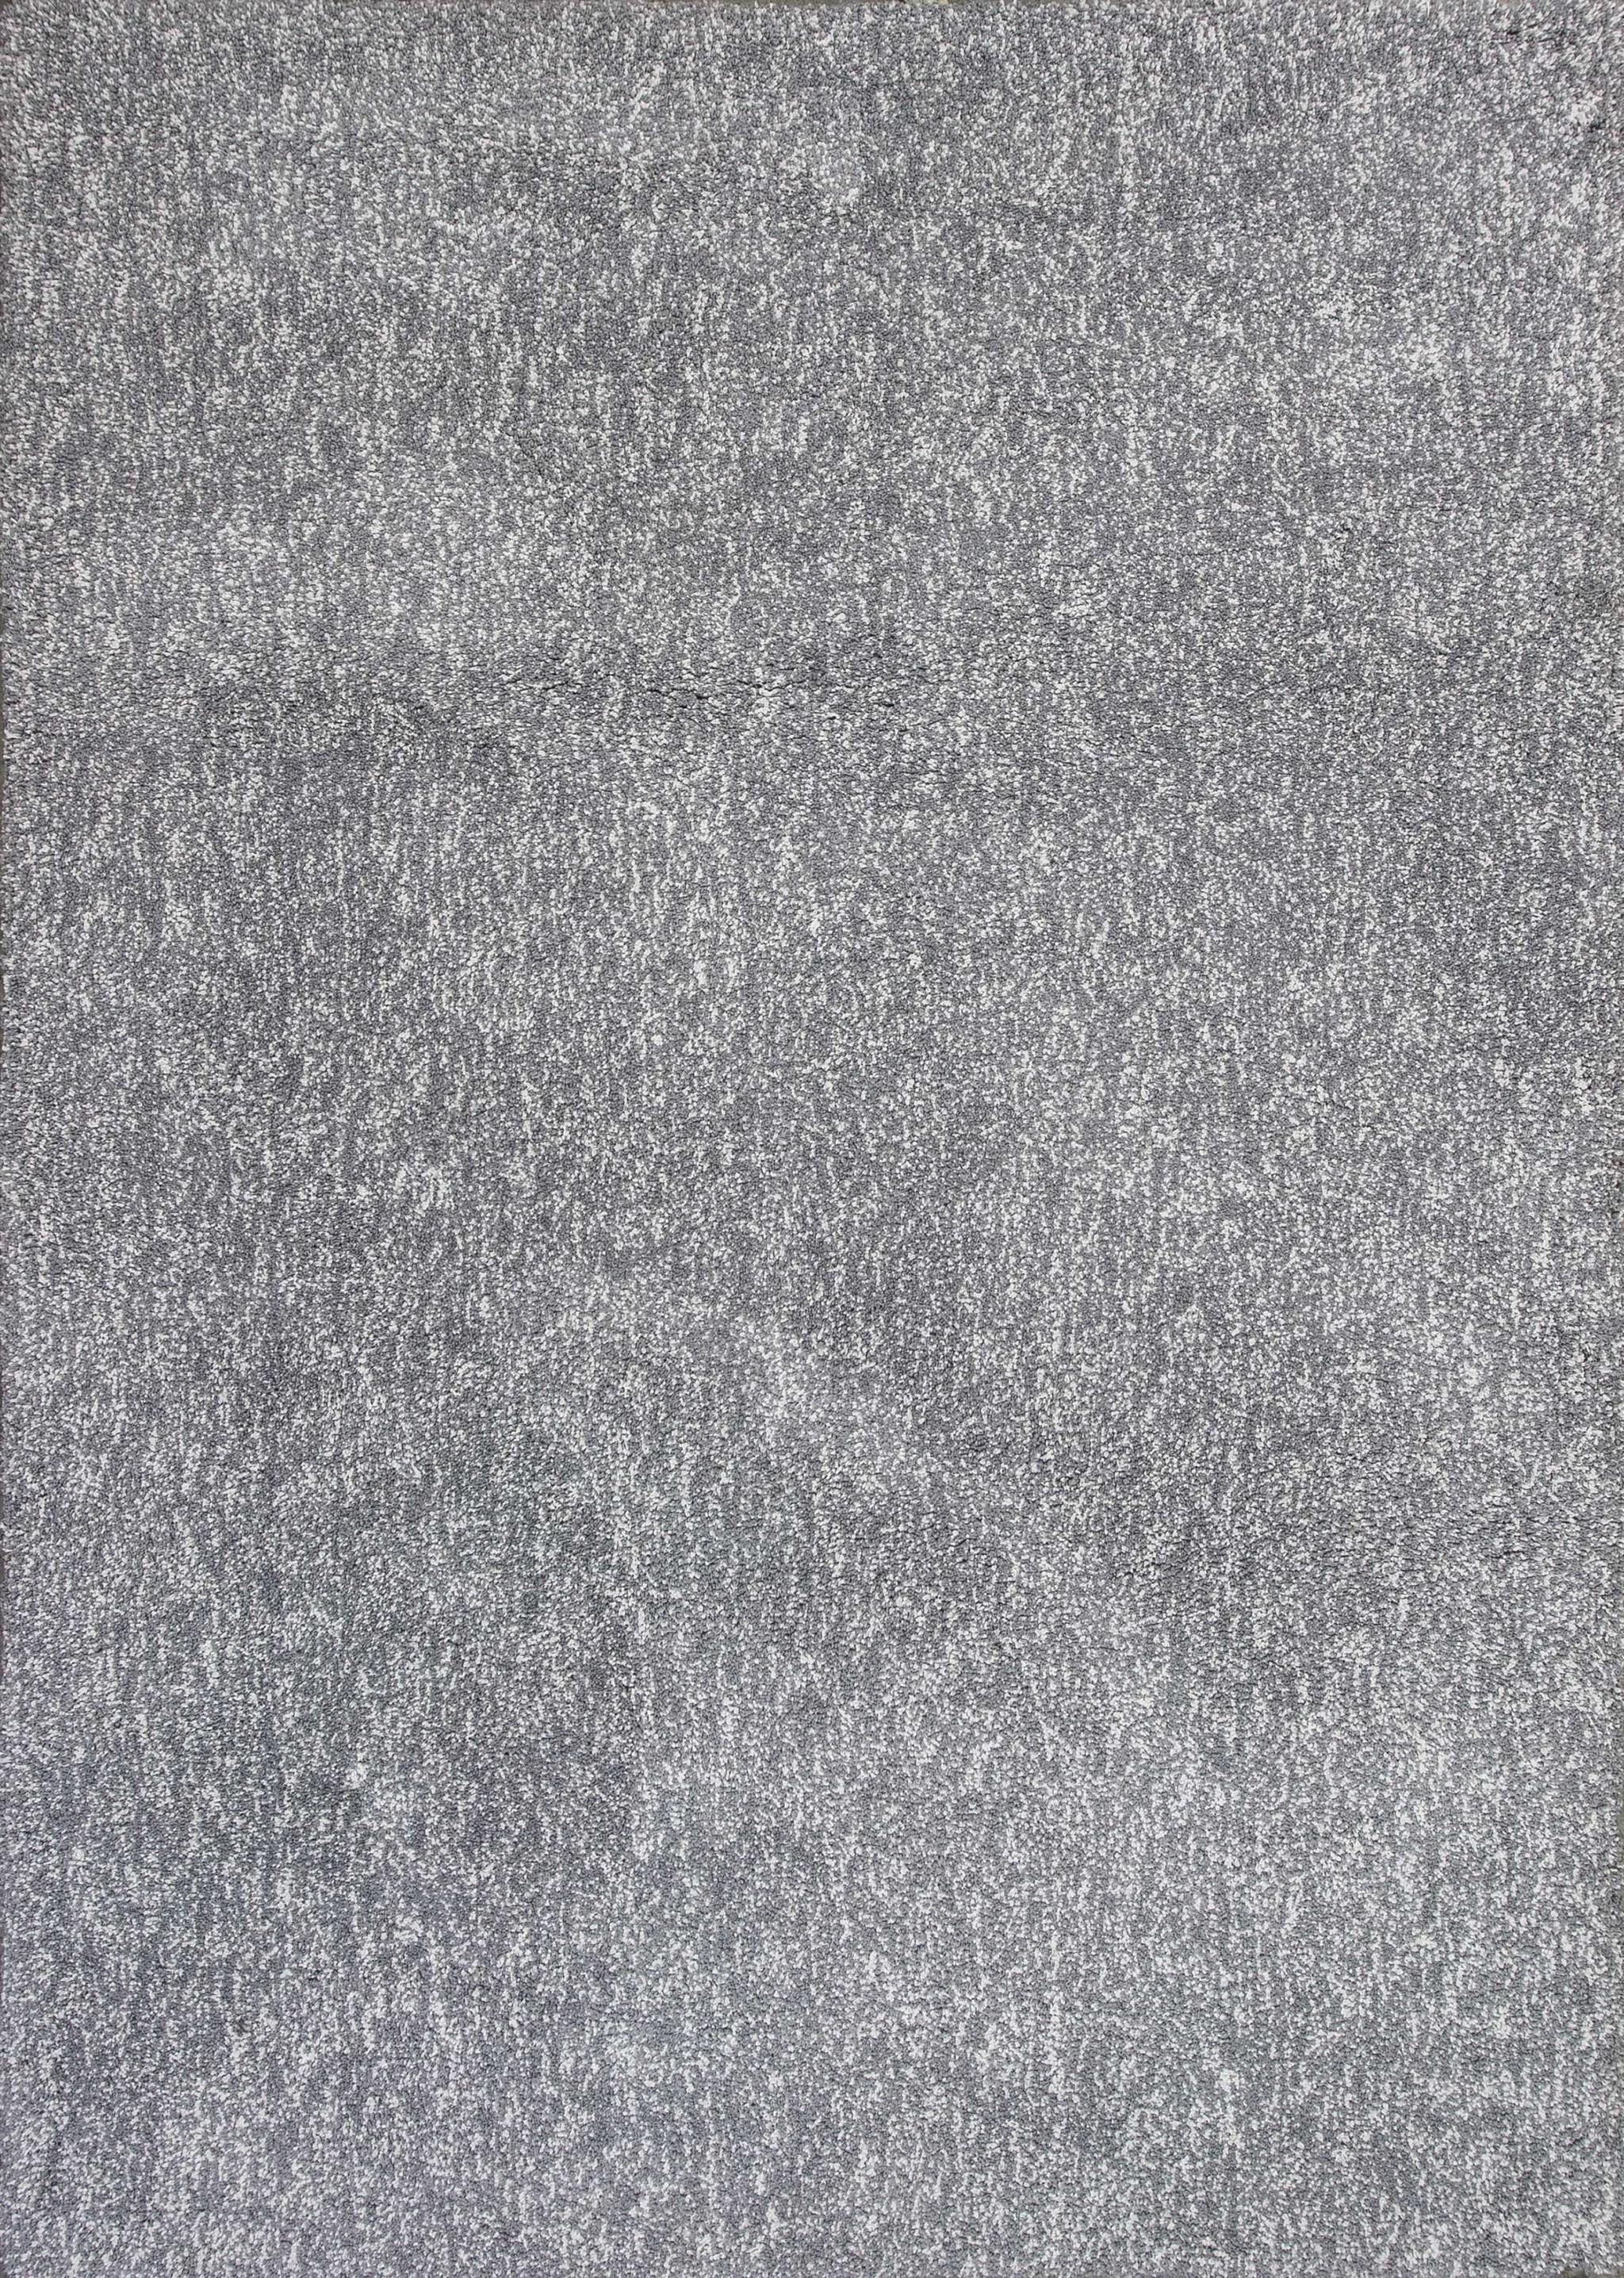 3'X5' Grey Heather Indoor Shag Rug-353919-1